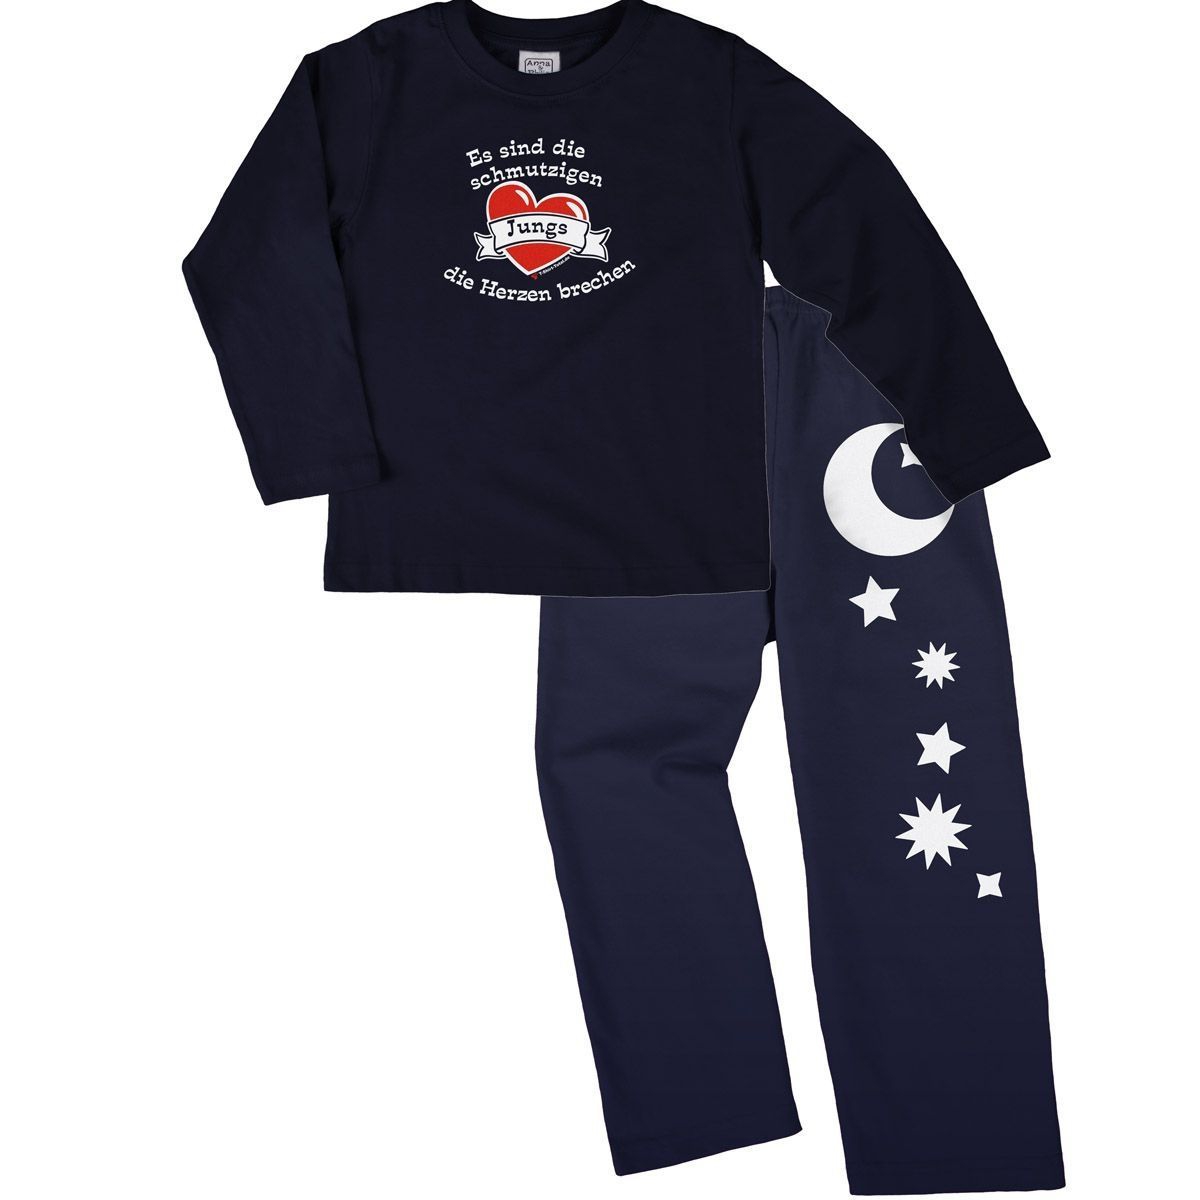 Schmutzige Jungs Pyjama Set navy / navy 68 / 74